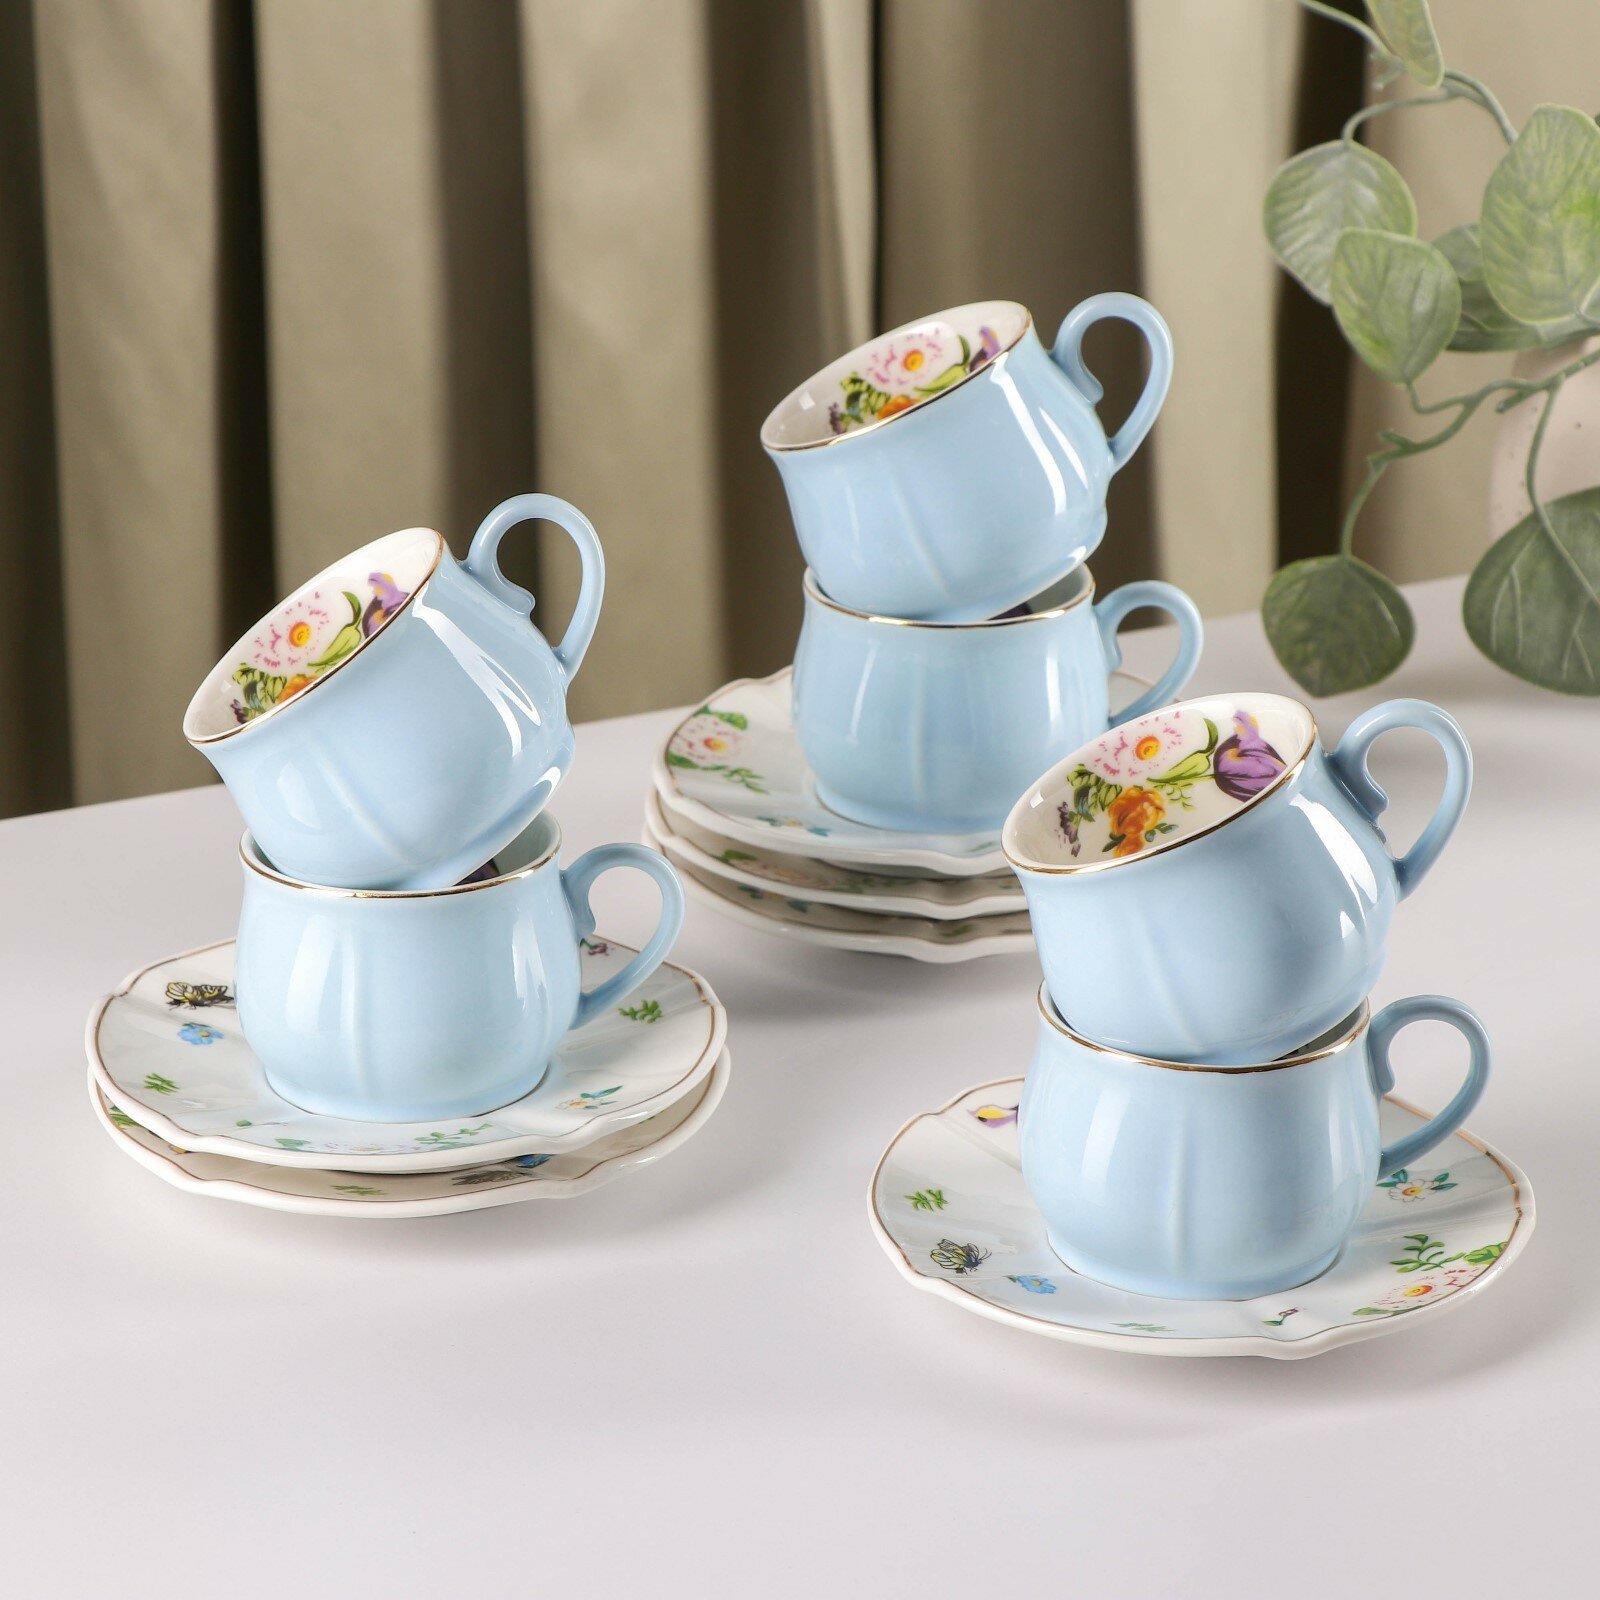 Набор посуды «Сирена», чайный сервиз: 6 чашек 100 мл, 6 блюдец d=12 см, в подарочной коробке, цвет голубой